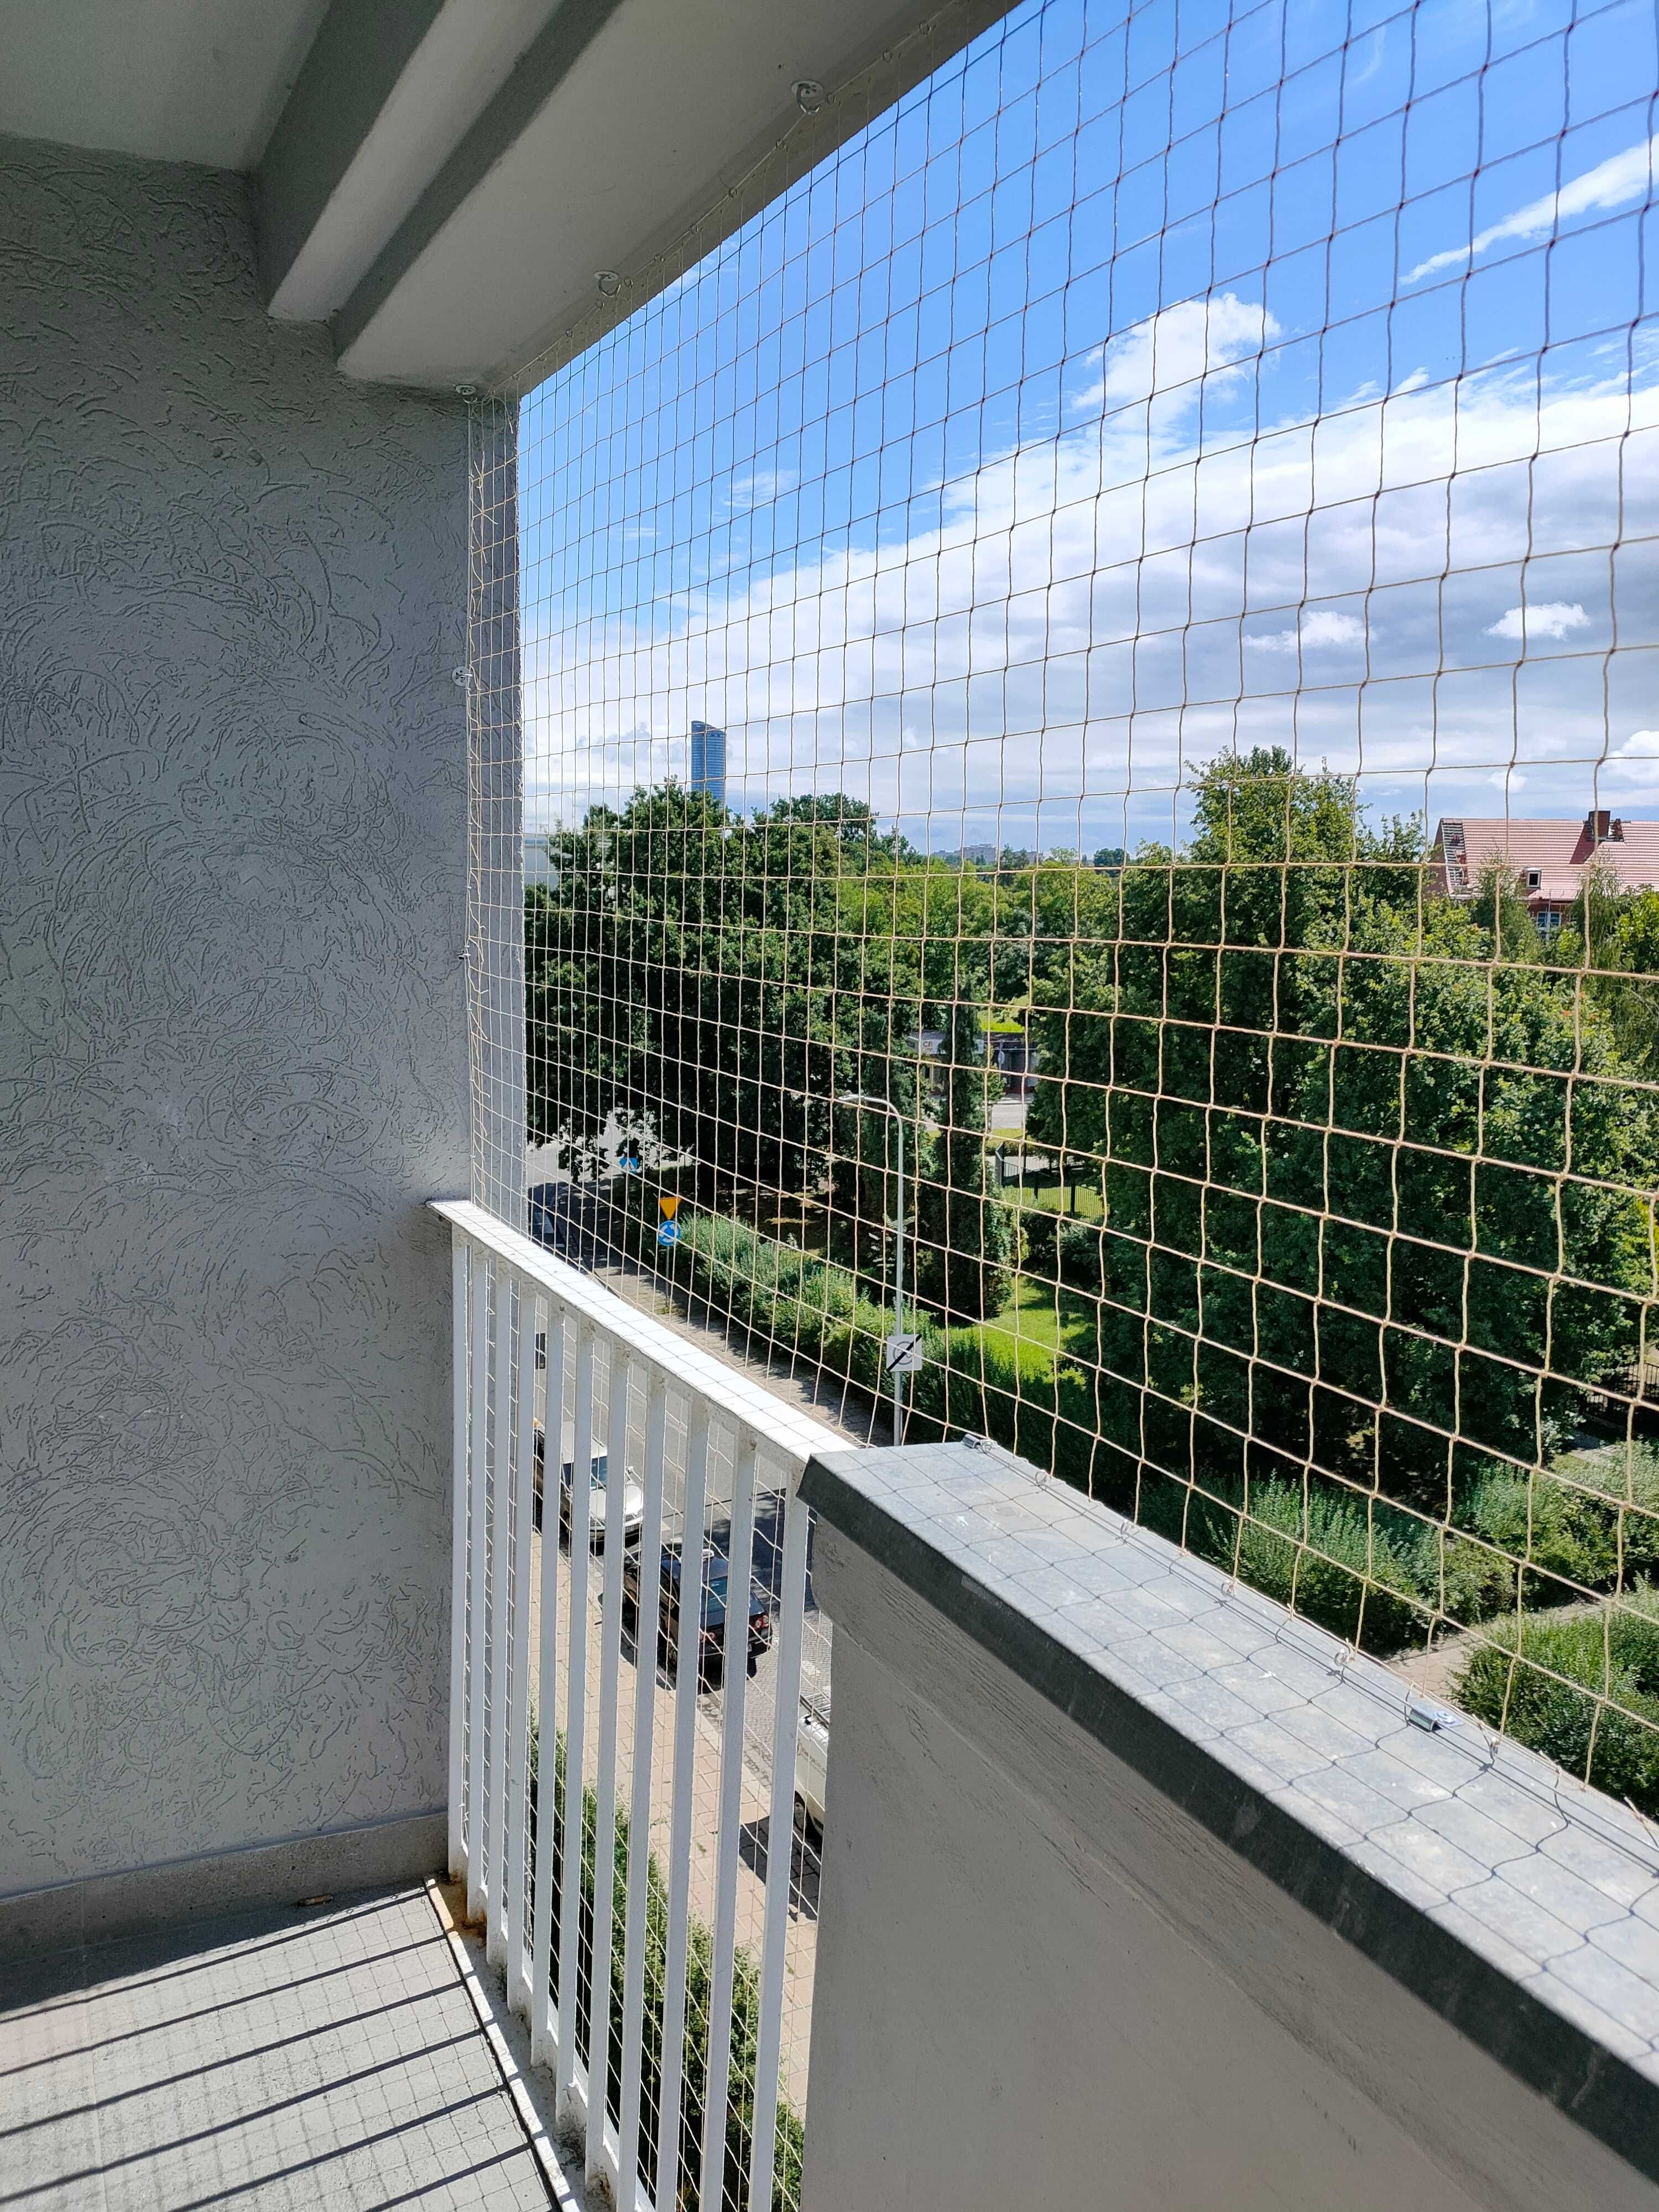 Siatka dla kota, siatka na balkon, taras, ogród, przed gołębiami